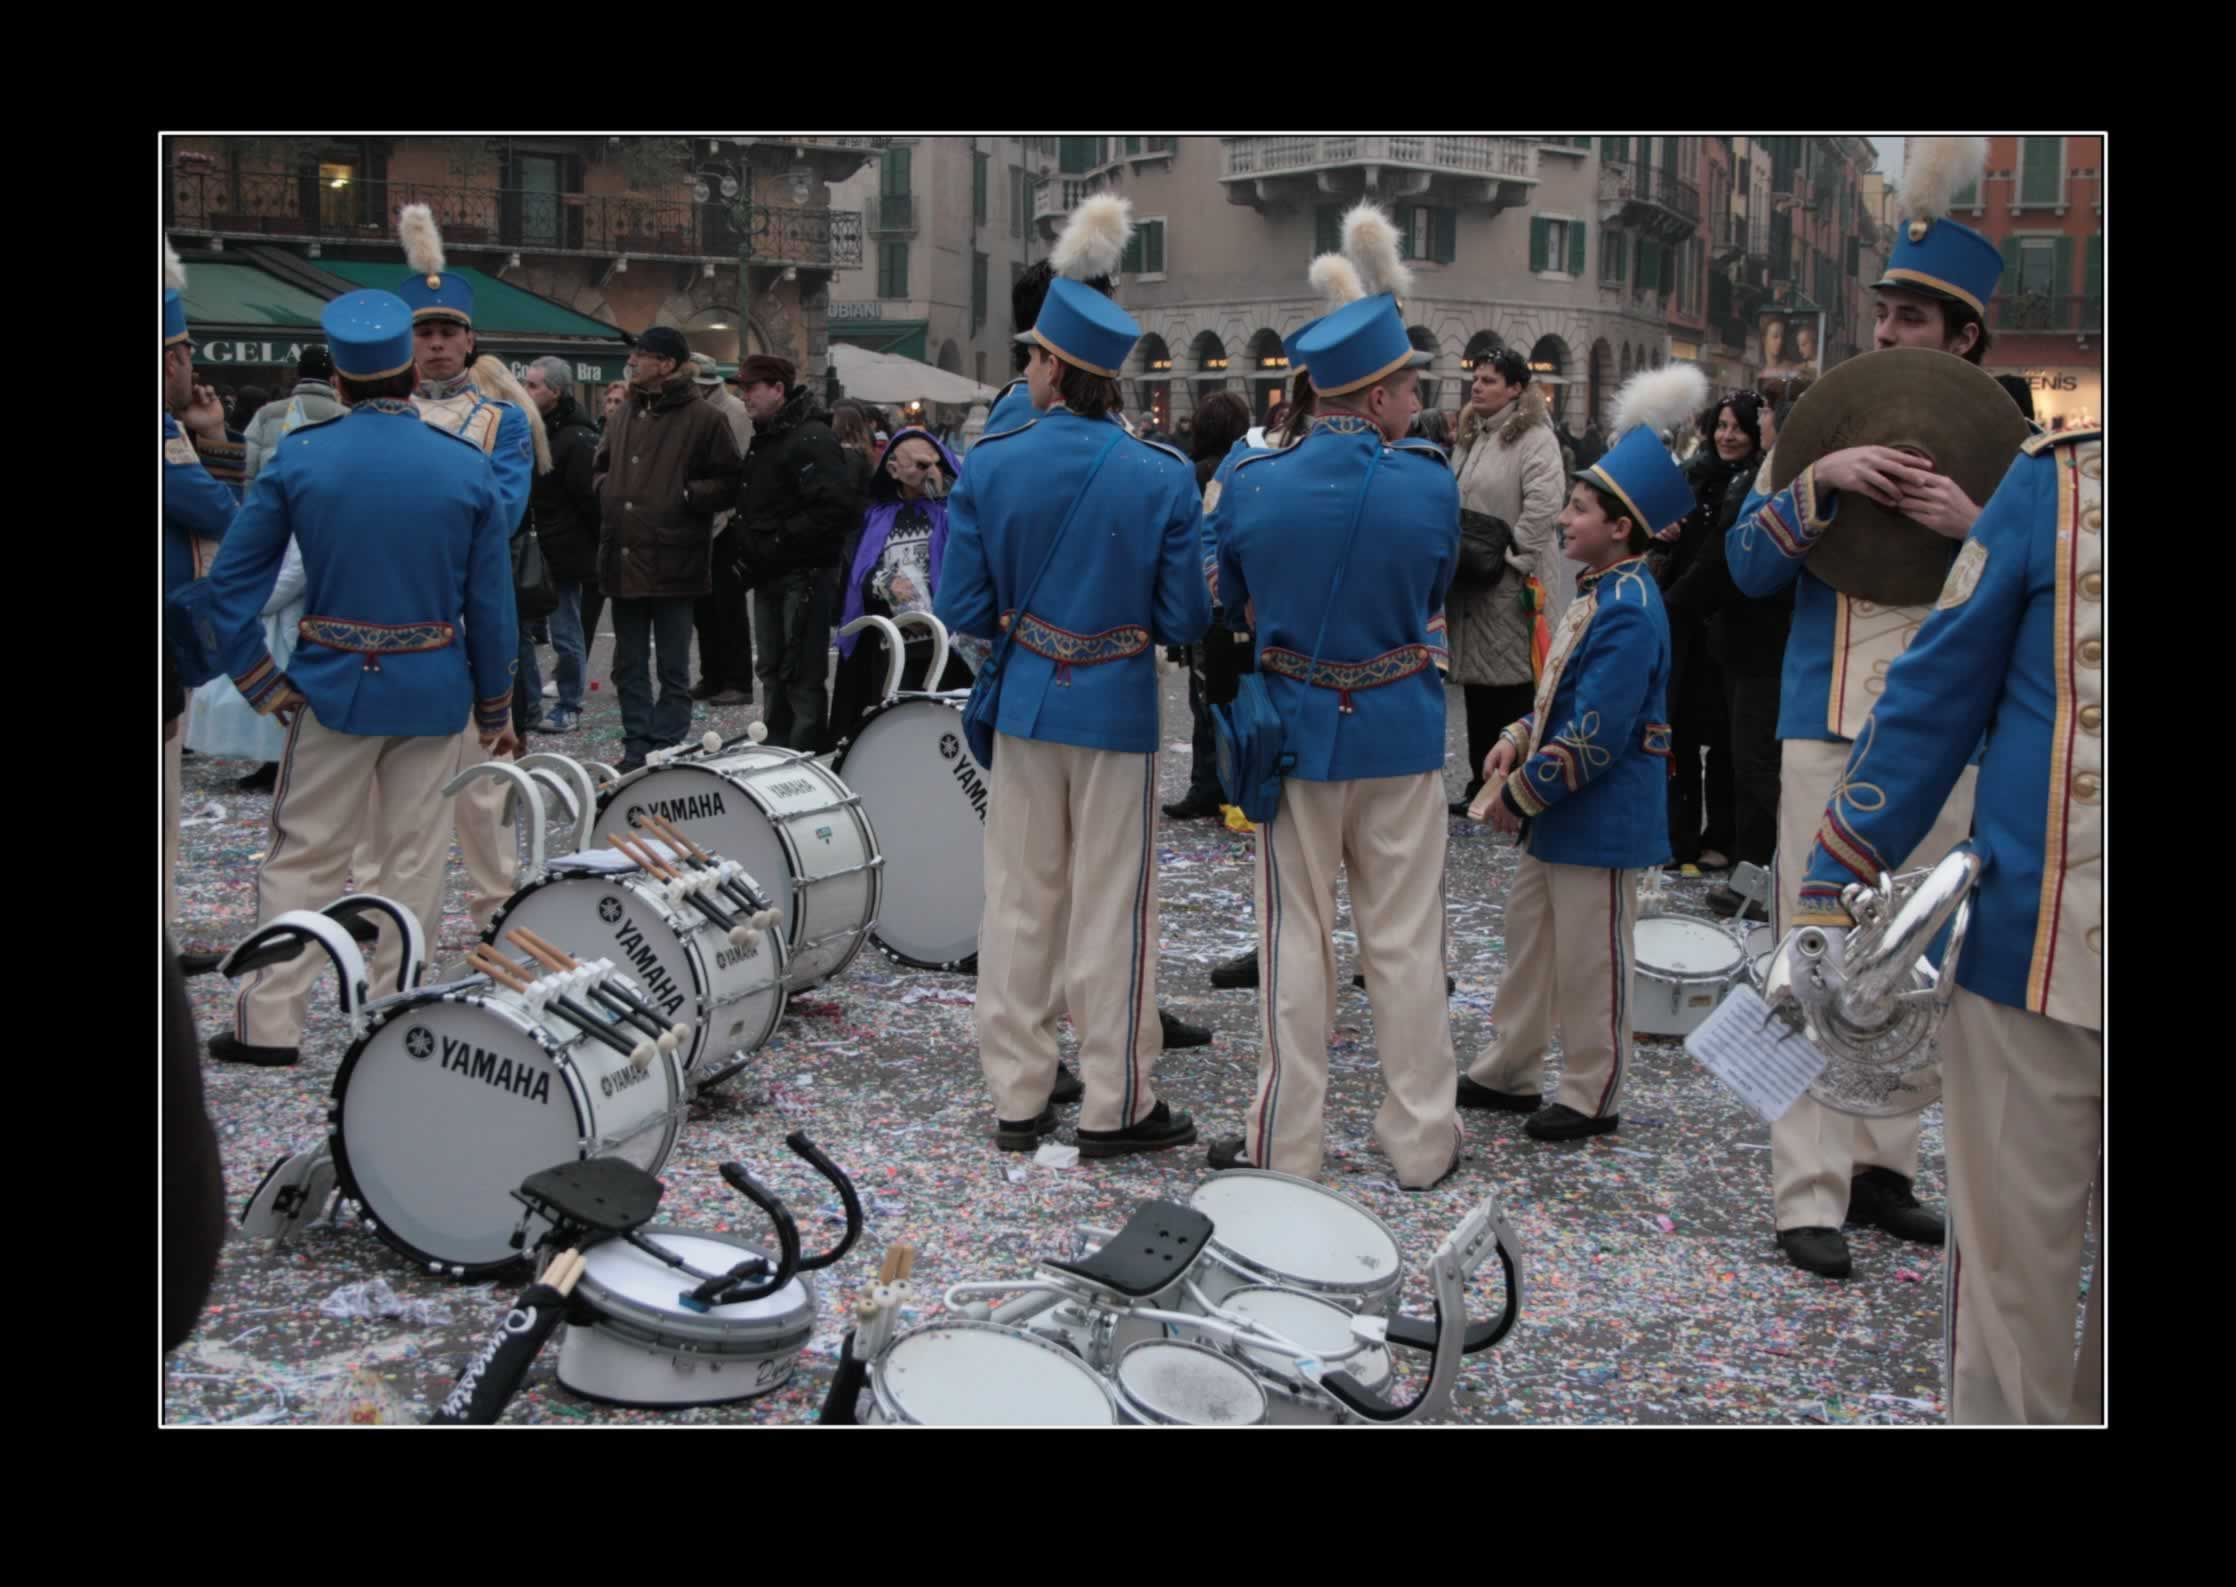 Verona Banda Musicale Carnevale Banda Musicale alla fine del carnevale